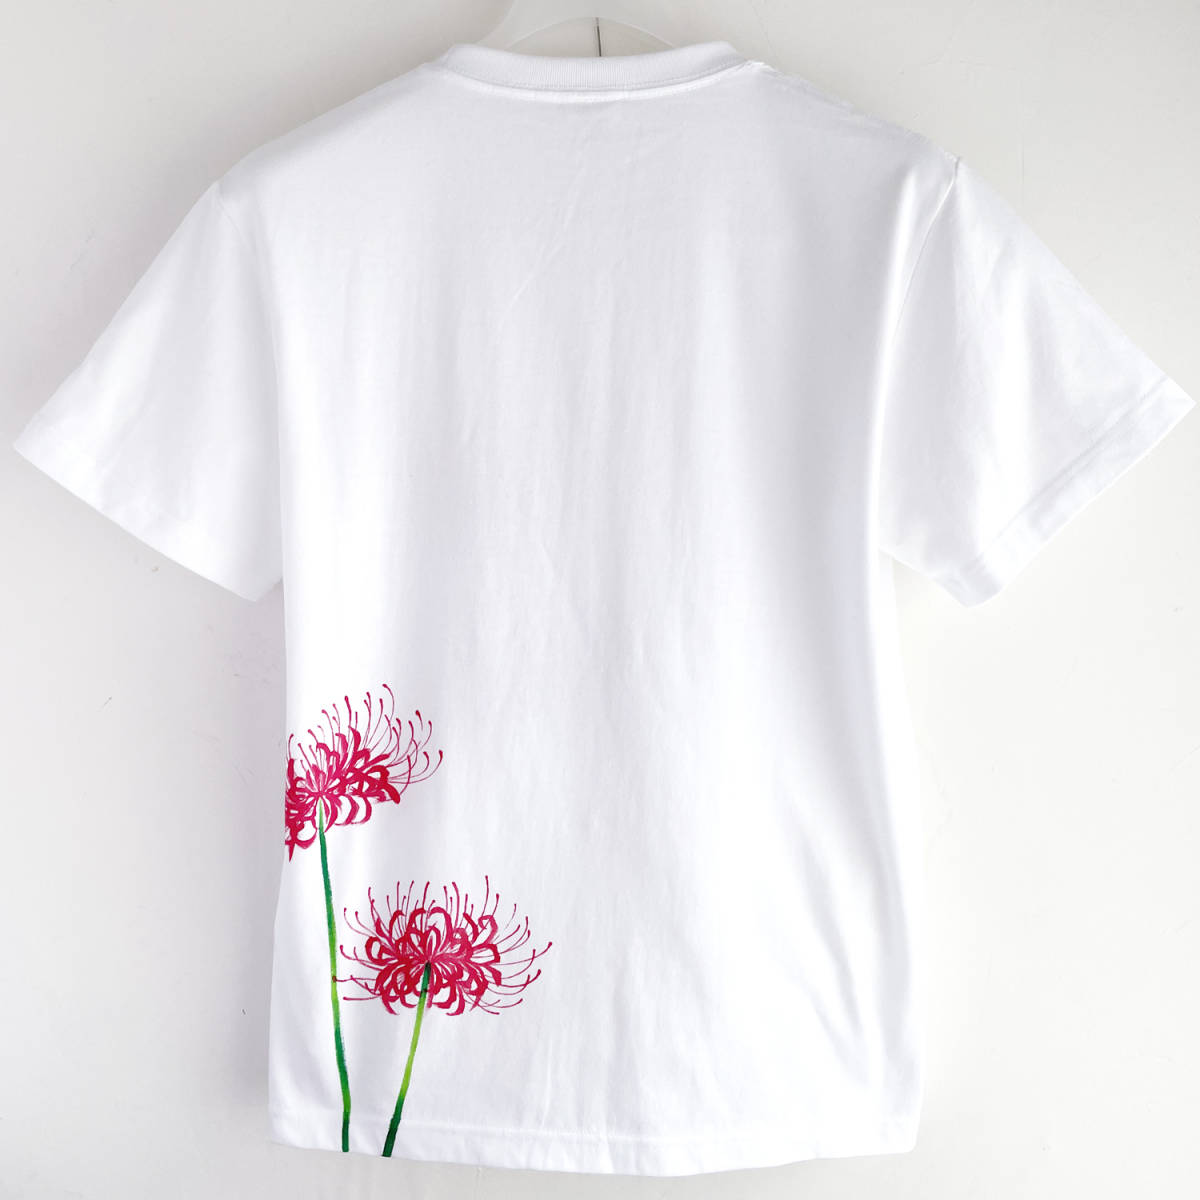 メンズ Tシャツ XXLサイズ 彼岸花柄Tシャツ 白 ハンドメイド 手描きTシャツ 和柄 花柄 秋冬